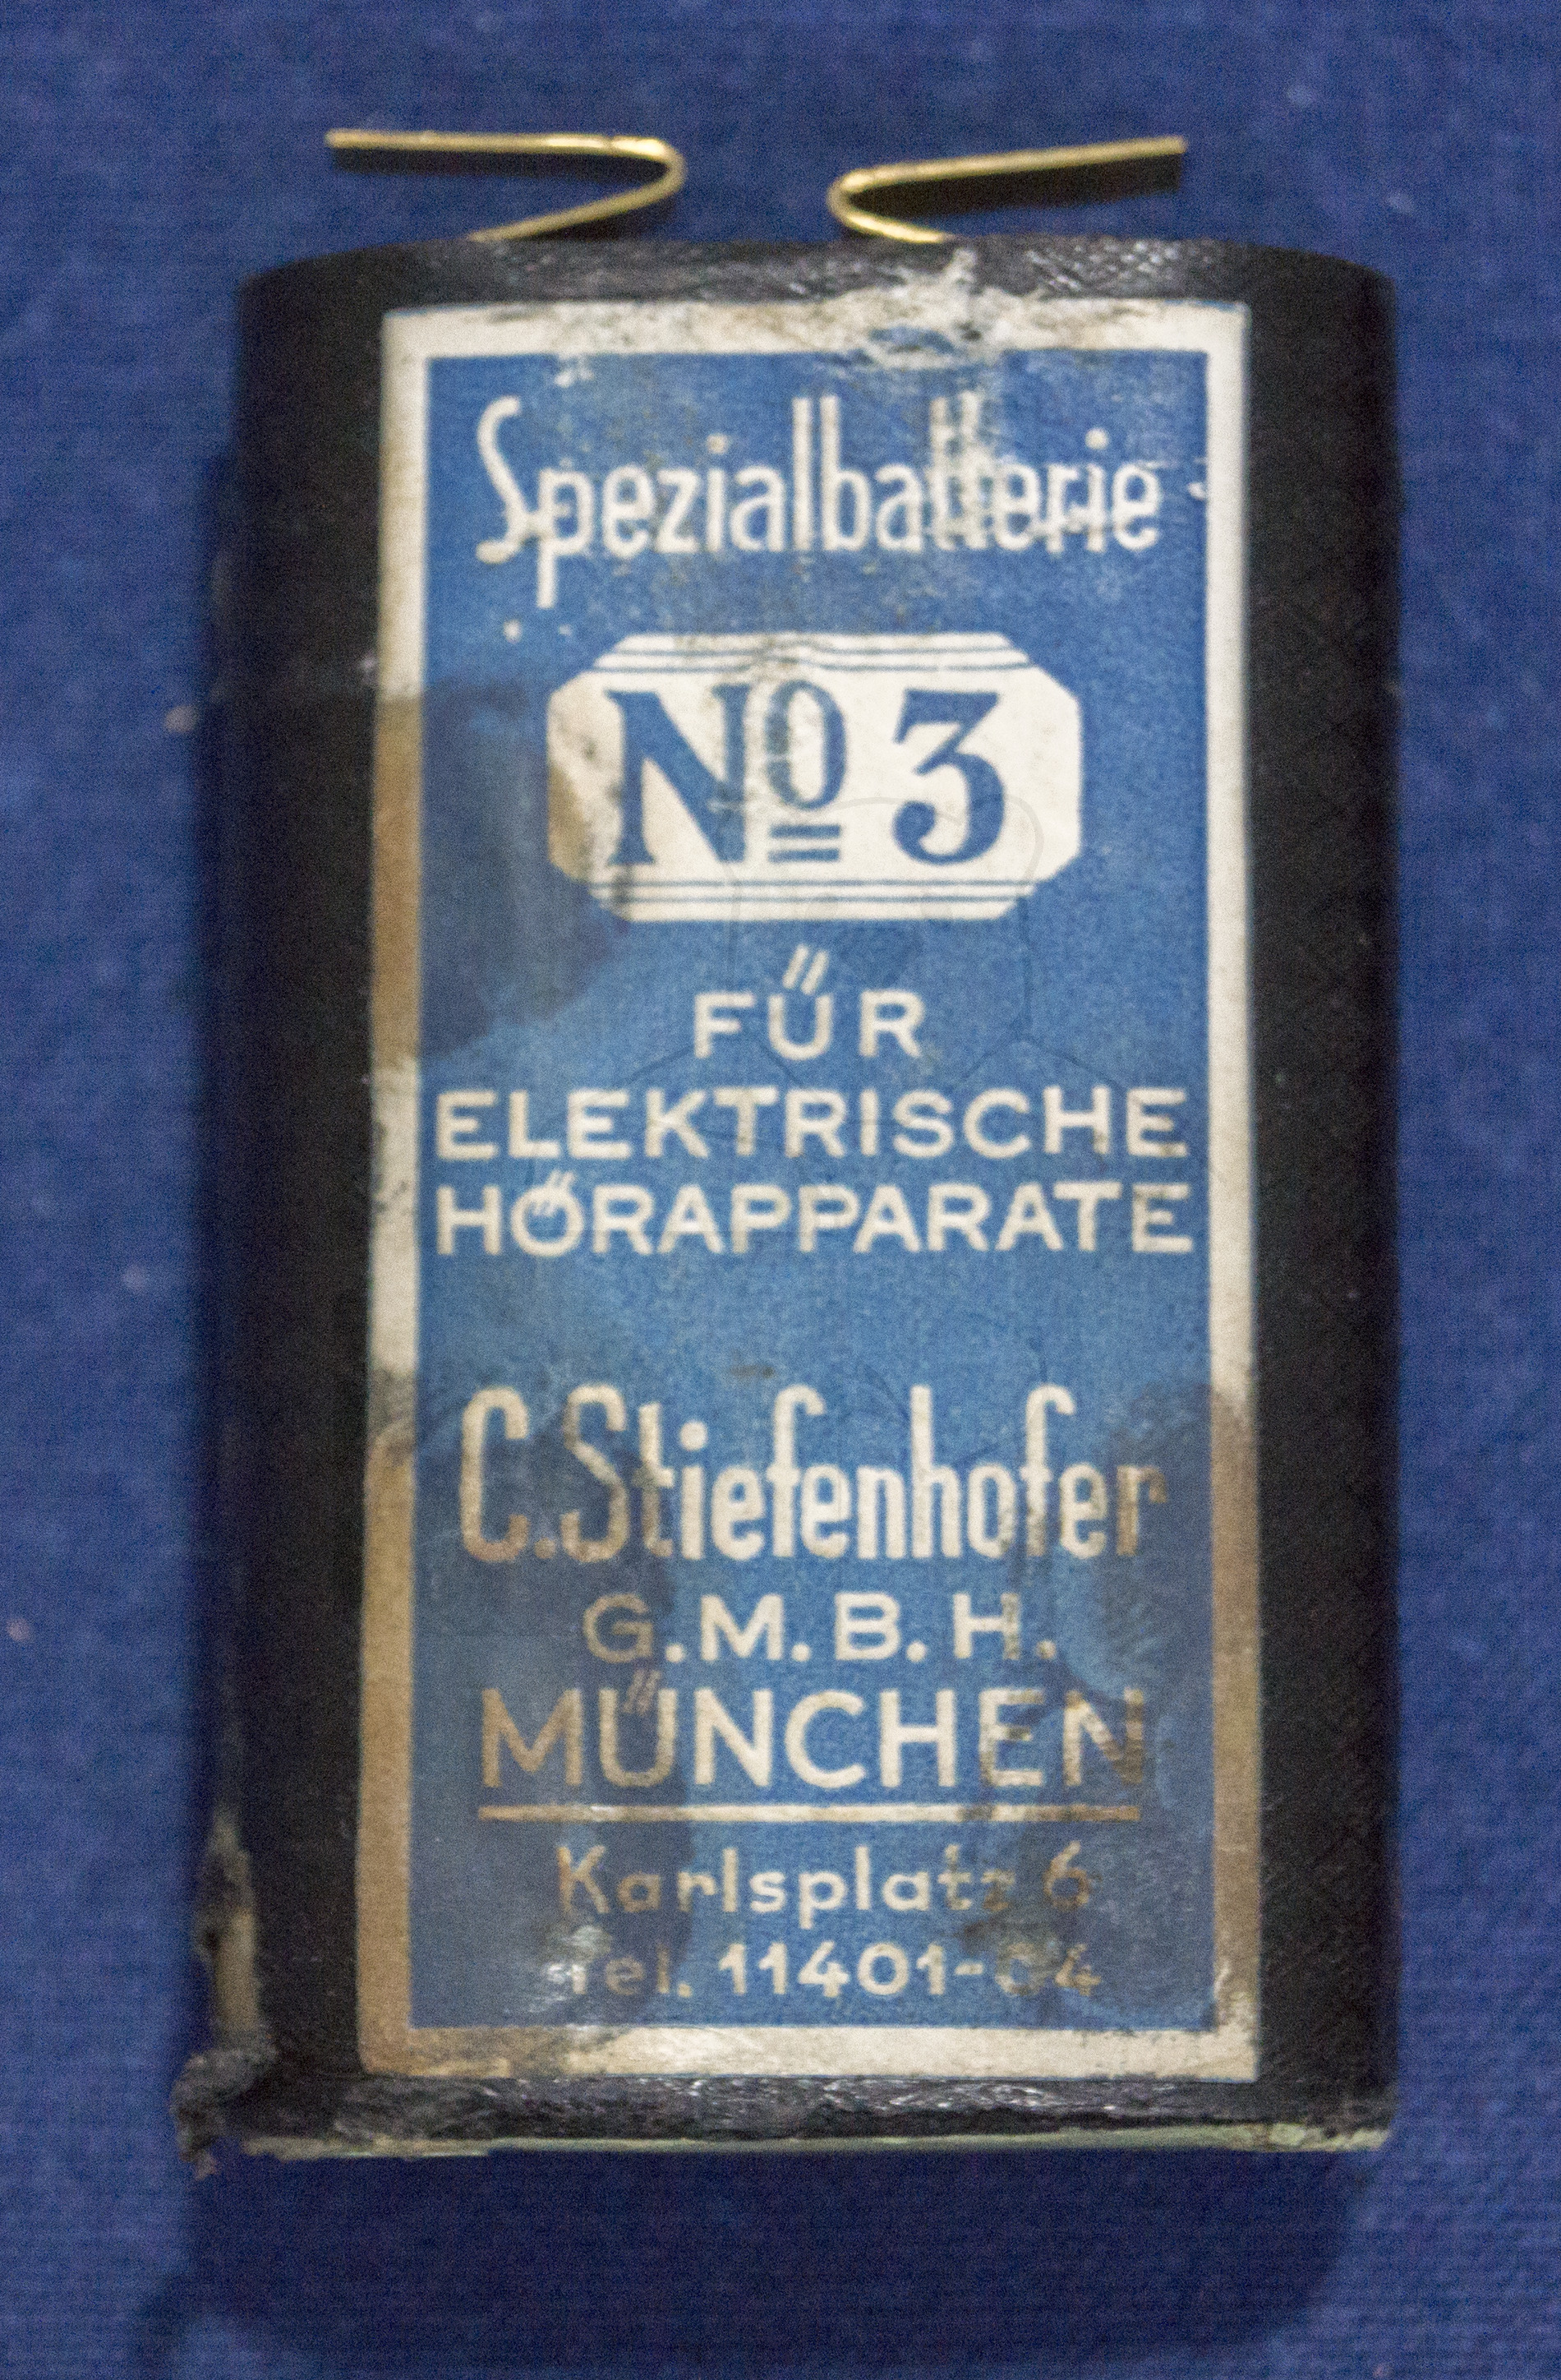 Hörgerät "Ich Höre Alles", ca. 1928/1930, Spezialbatterie "Nr. 3" für elektrische Hörapperate